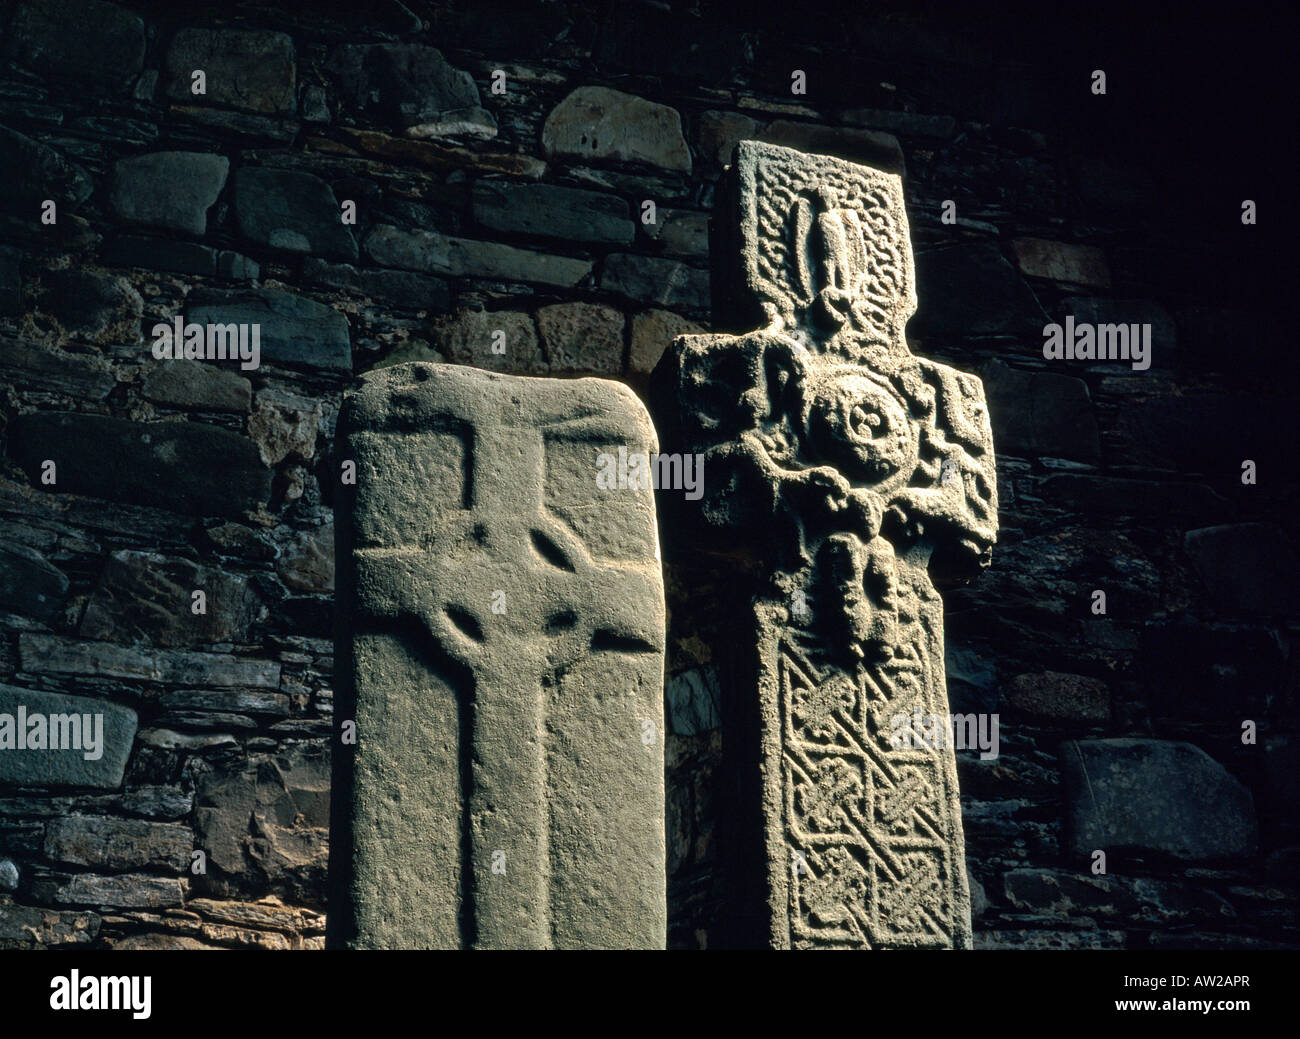 Keills-Kapelle in der Nähe von Loch Sween in Argyll, West-Schottland, Großbritannien. Frühen mittelalterlichen keltischen christlichen geschnitzt Steinkreuze Stockfoto